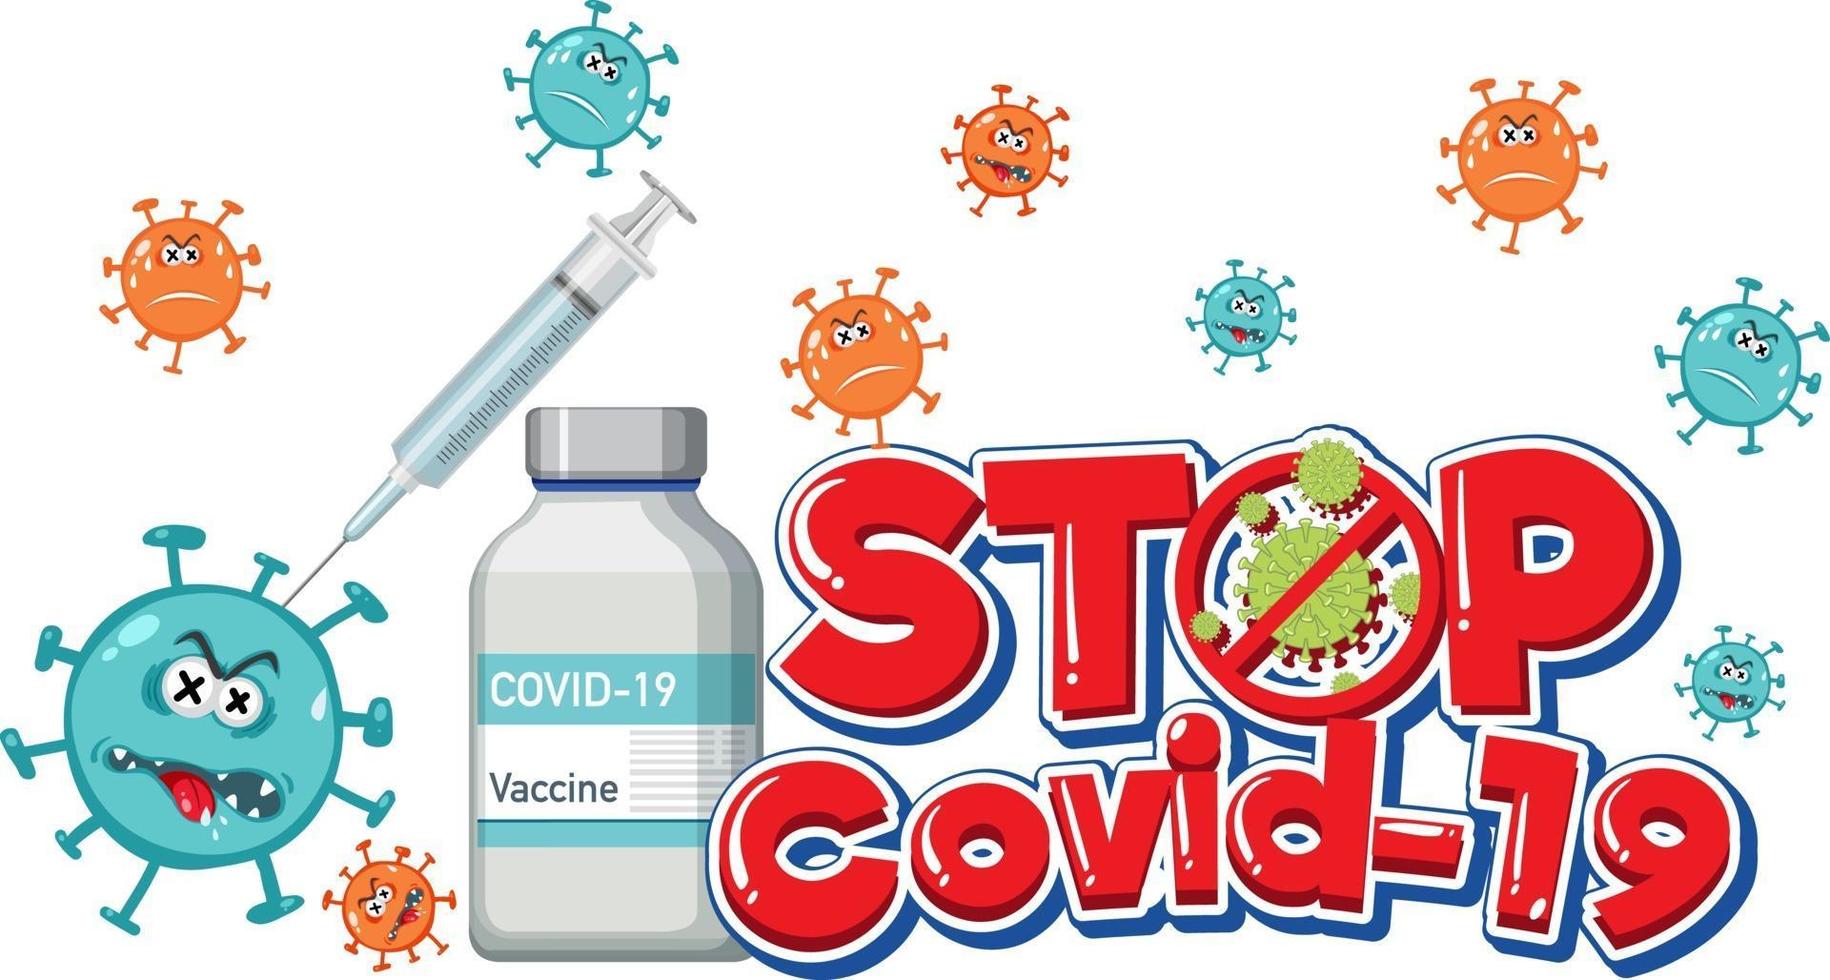 Detenga el logotipo o pancarta de covid-19 con el frasco de vacuna covid-19 vector